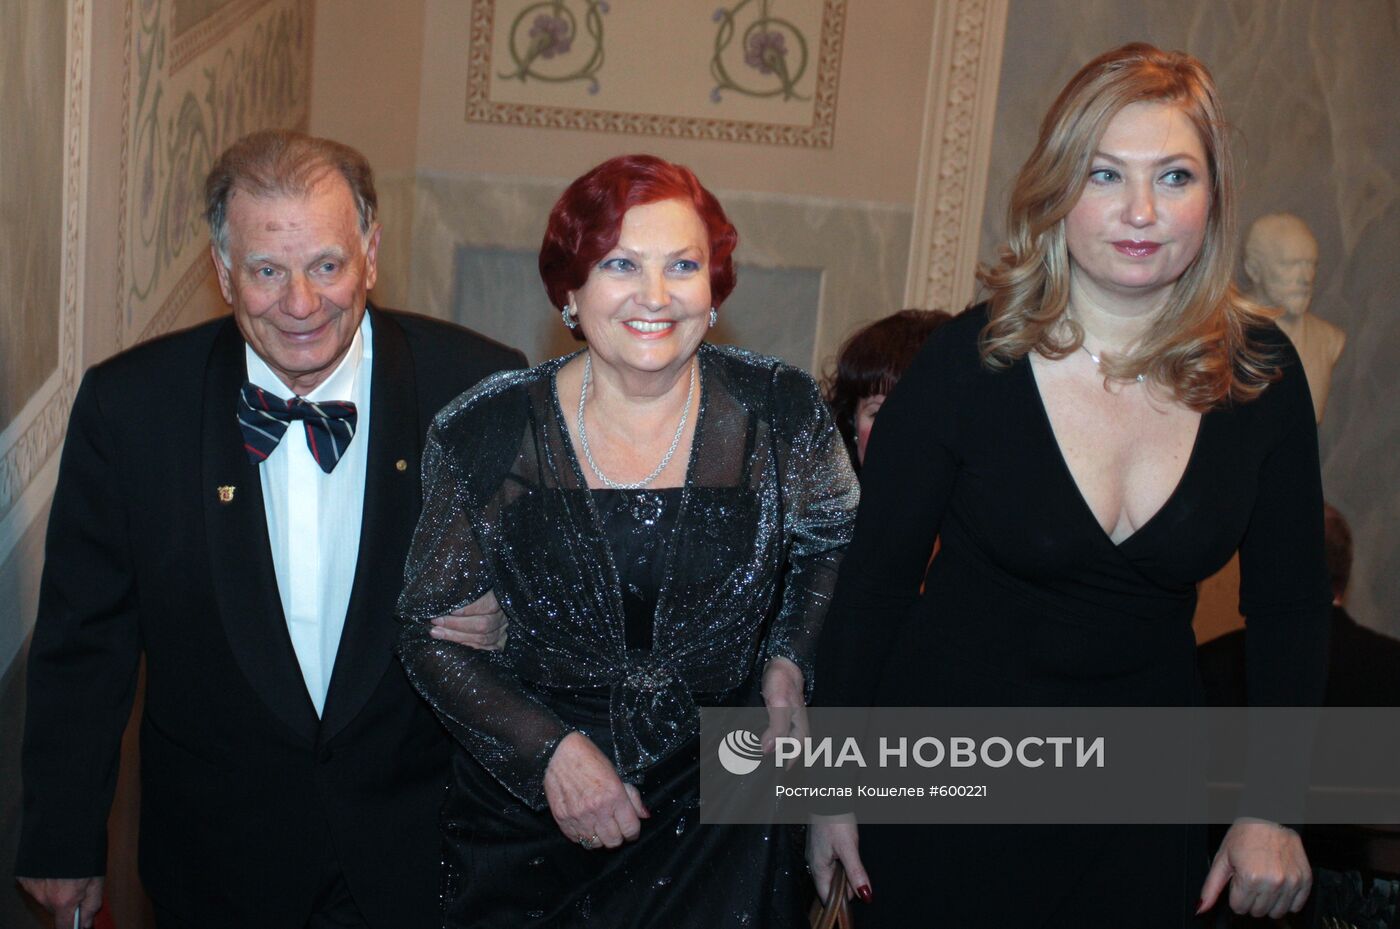 Вечер в честь 80-летия Жореса Алферова в Санкт-Петербурге